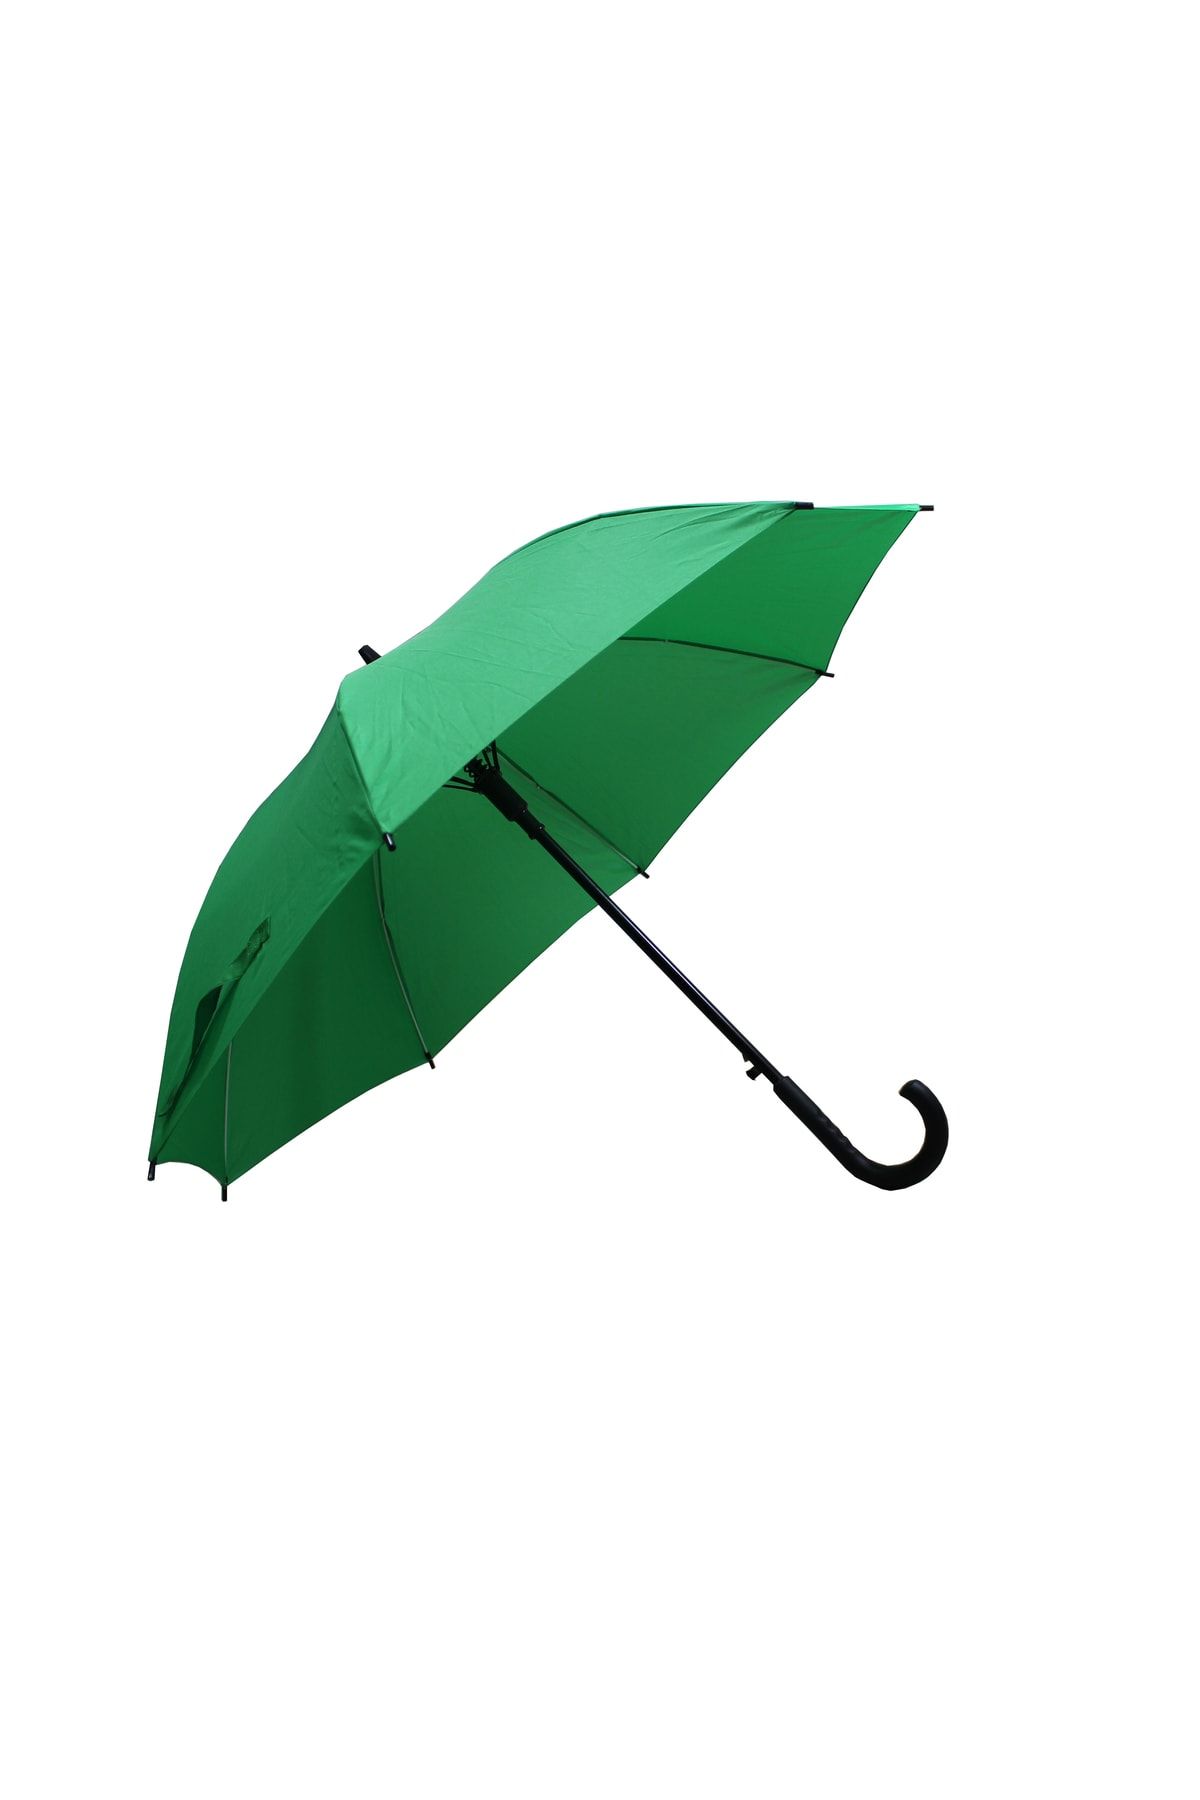 Sunlife 8 Telli Otomatik Fiberglass Baston Koyu Yeşil Renkli Yağmur Şemsiyesi